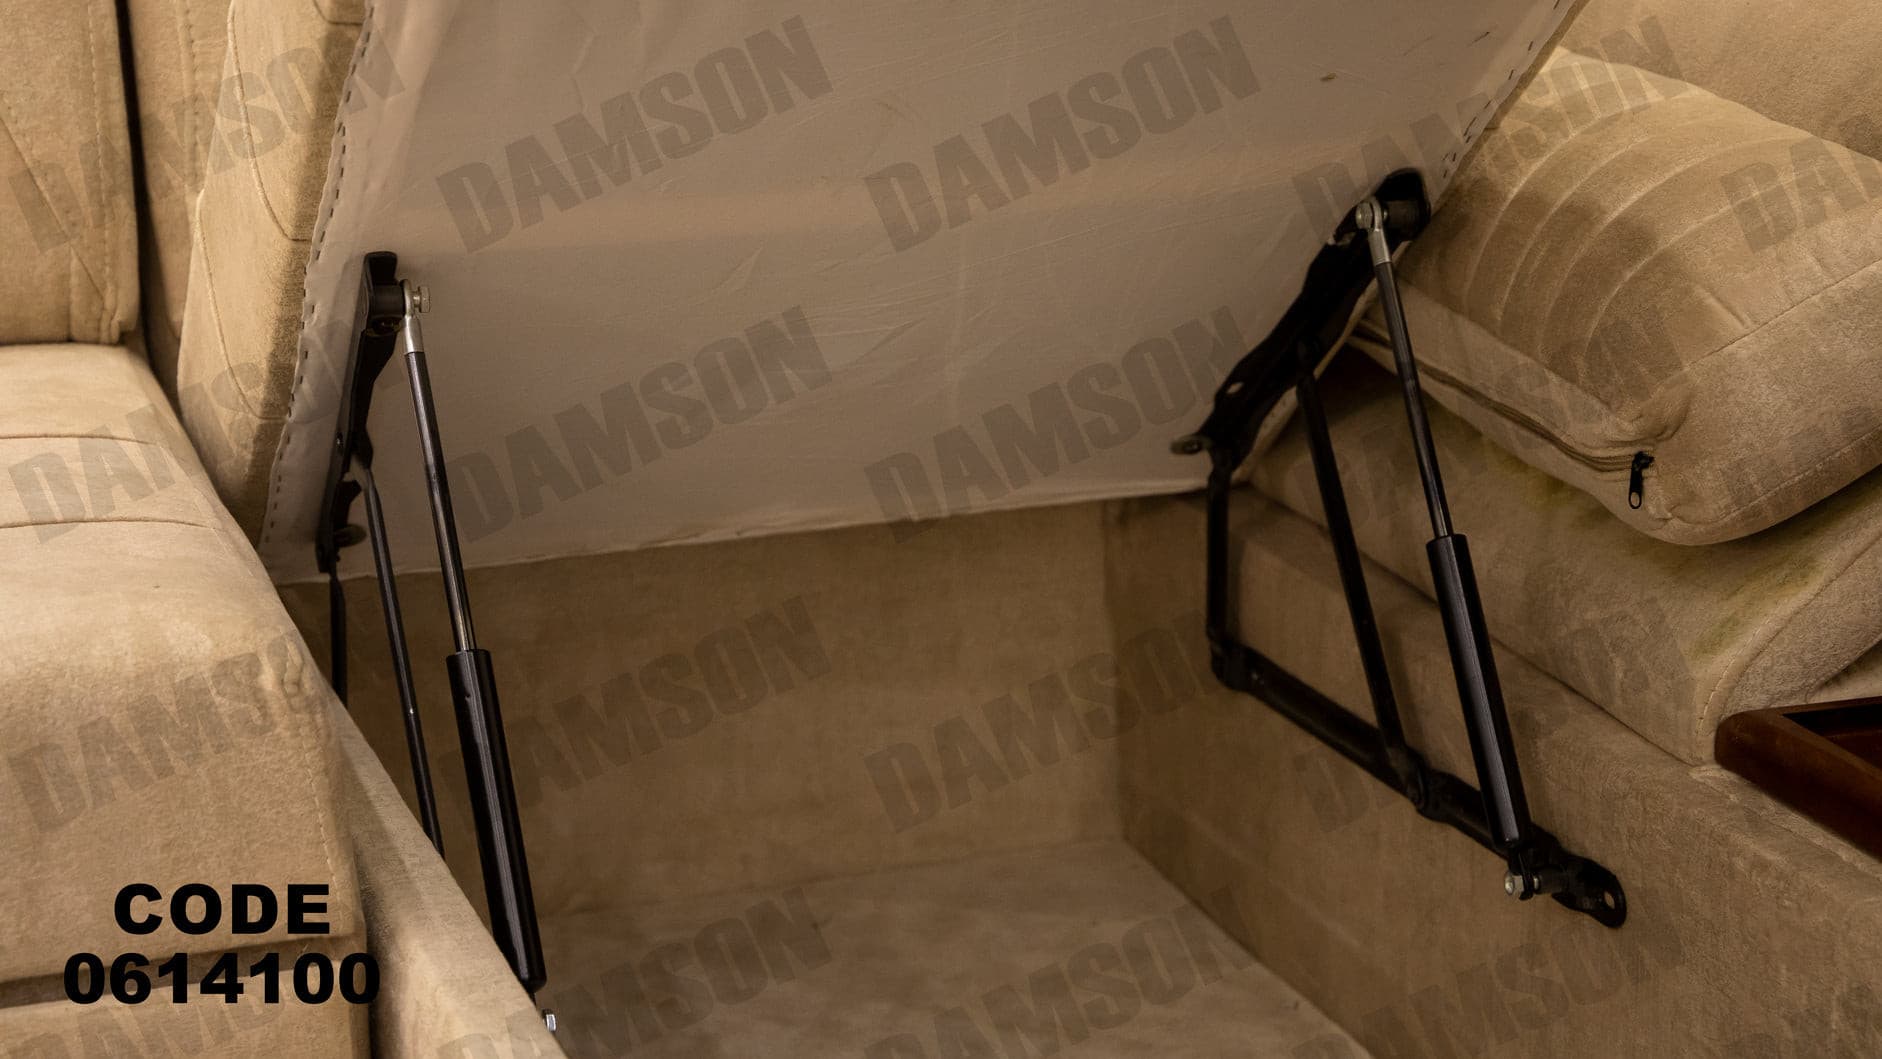 ركنة سرير و سحارة 141 - Damson Furnitureركنة سرير و سحارة 141